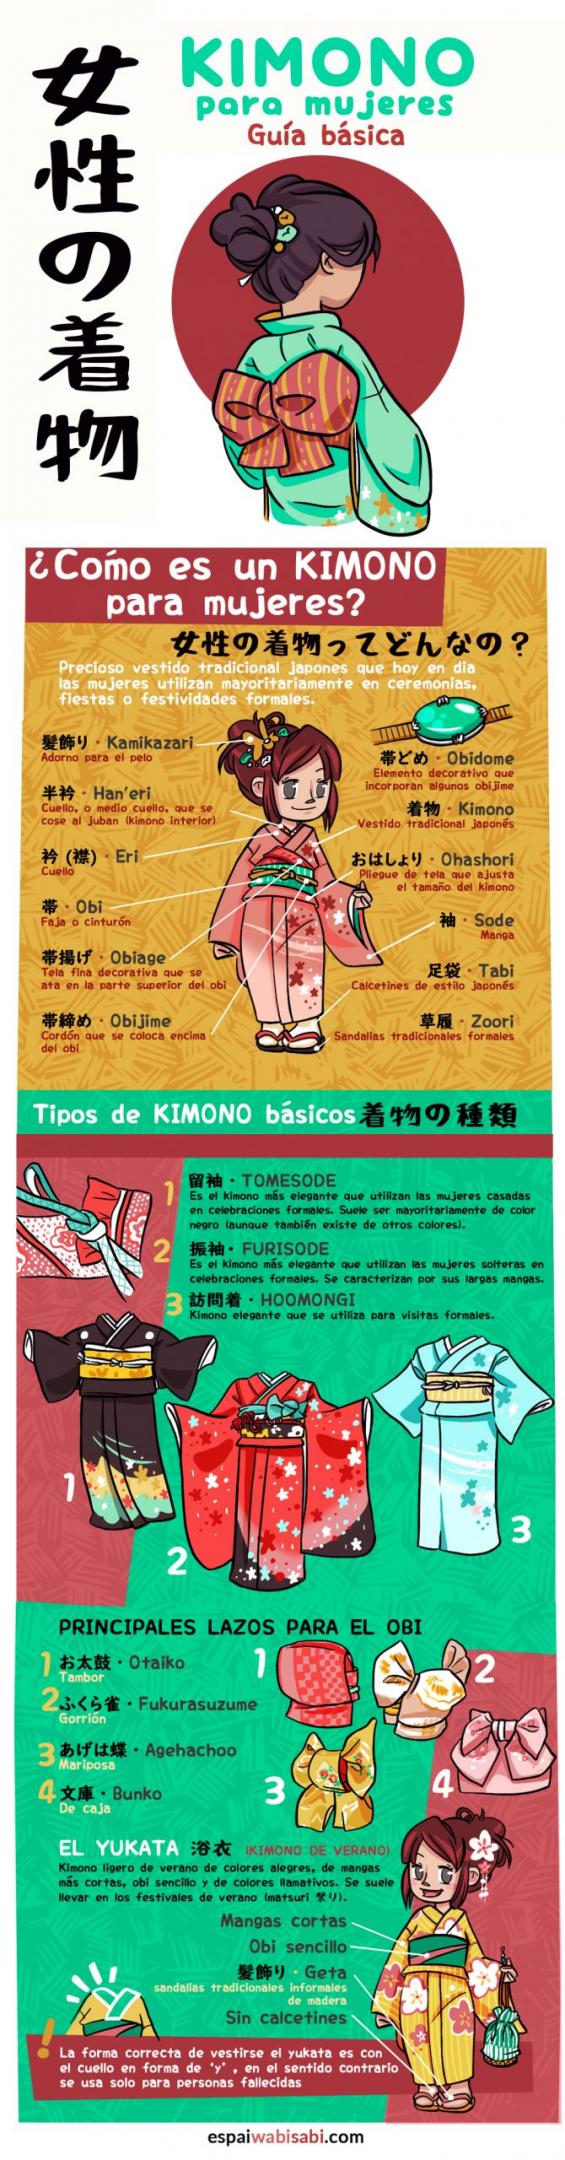 guia del kimono para mujer infografia